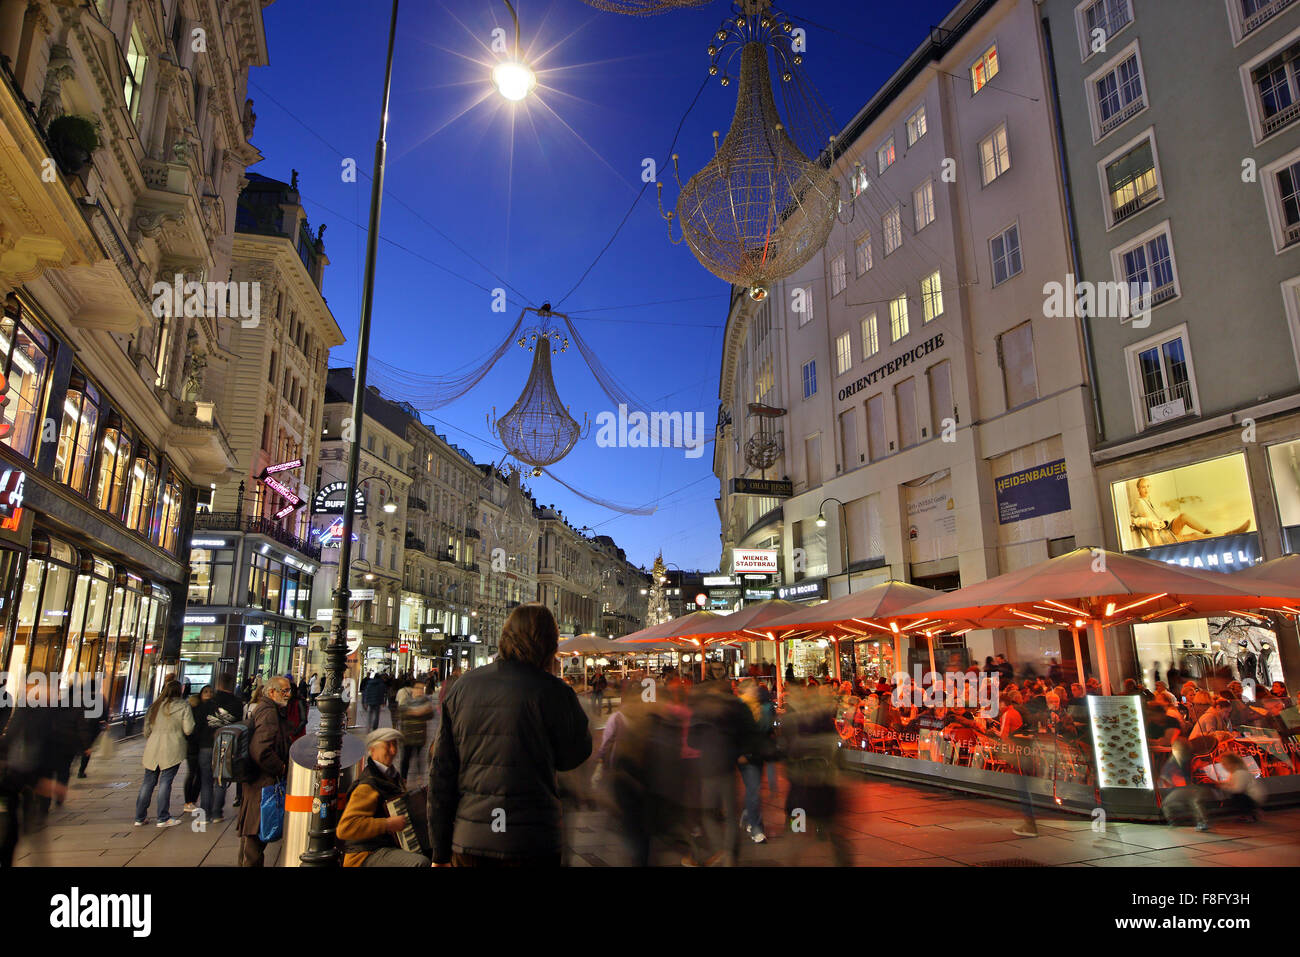 Graben, una delle principali strade commerciali di Vienna, Austria. Foto Stock